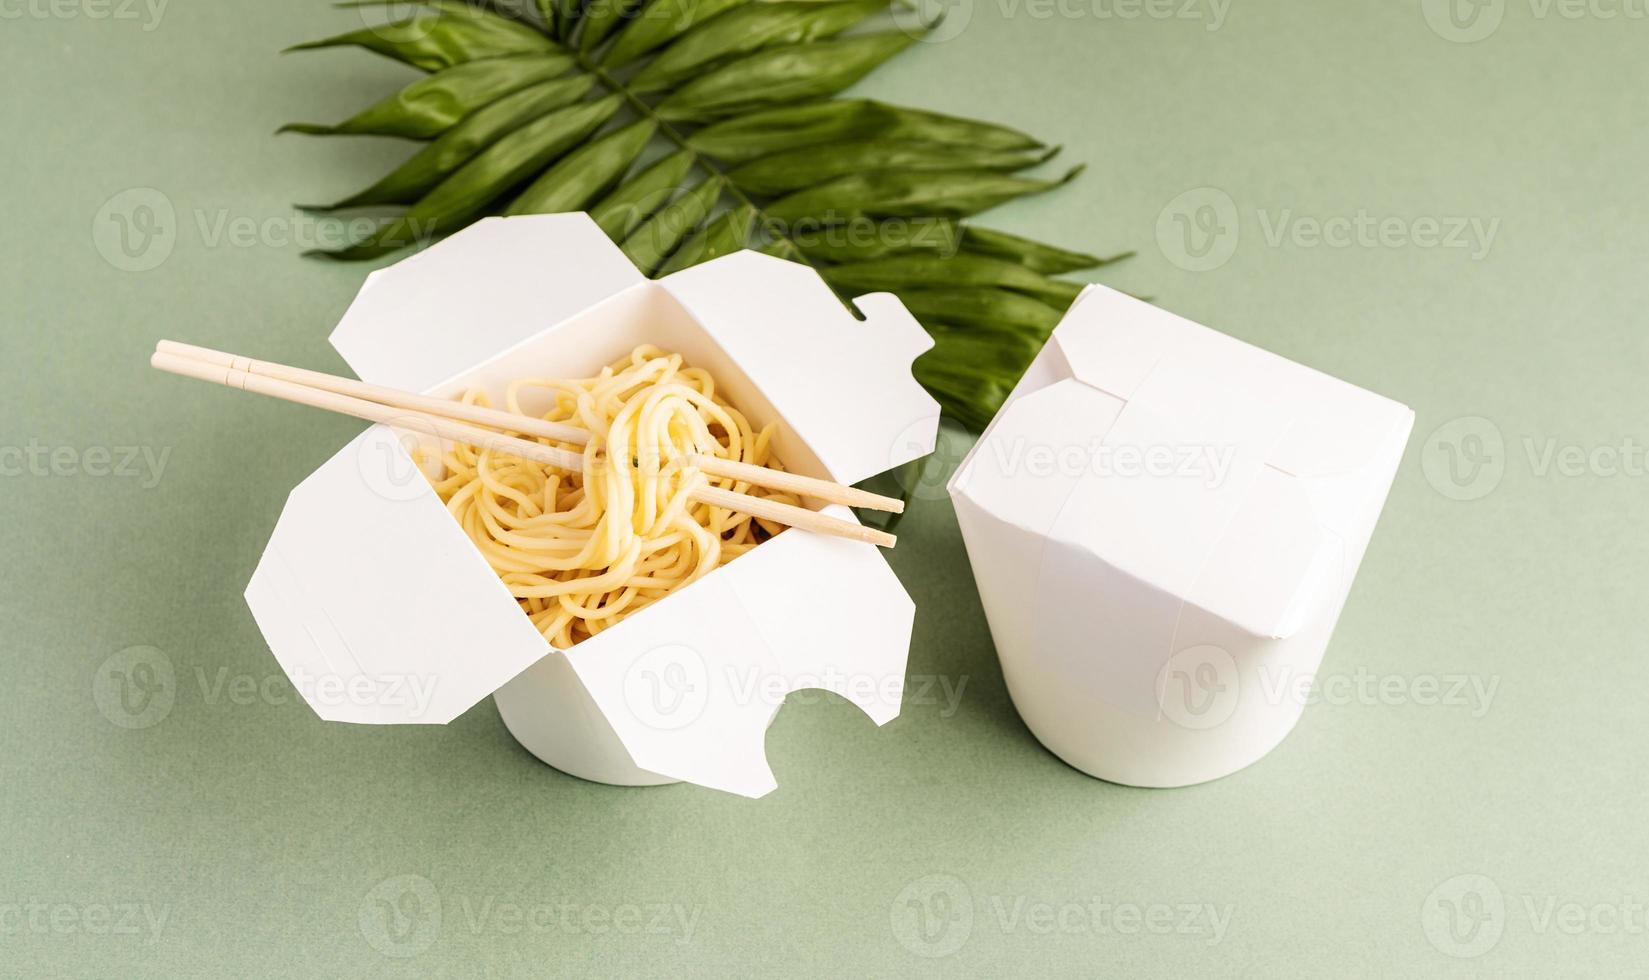 scatola di carta per wok aperta con noodles e bacchette foto